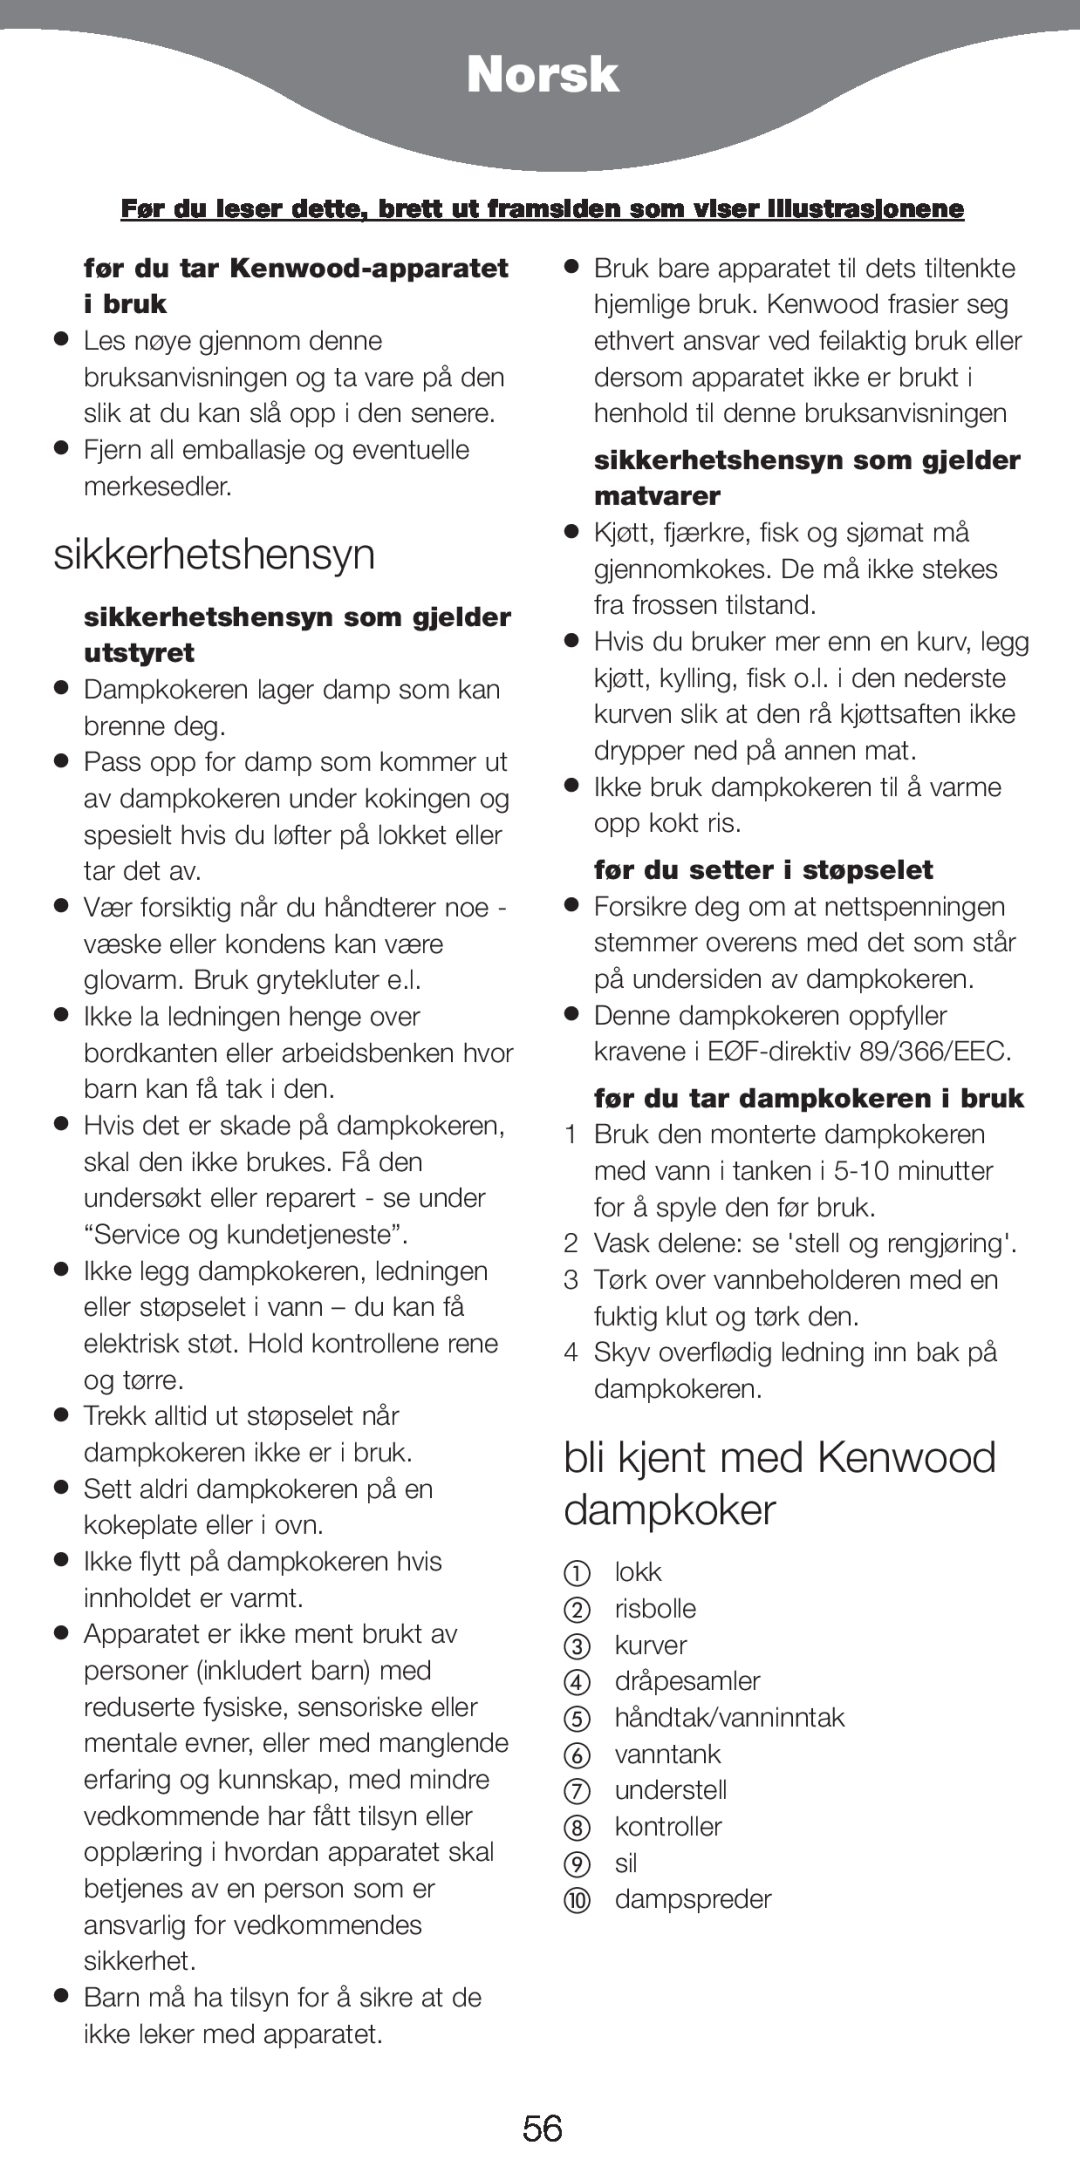 Kenwood FS470 series manual Norsk, sikkerhetshensyn, bli kjent med Kenwood dampkoker, f¿r du tar Kenwood-apparatet i bruk 